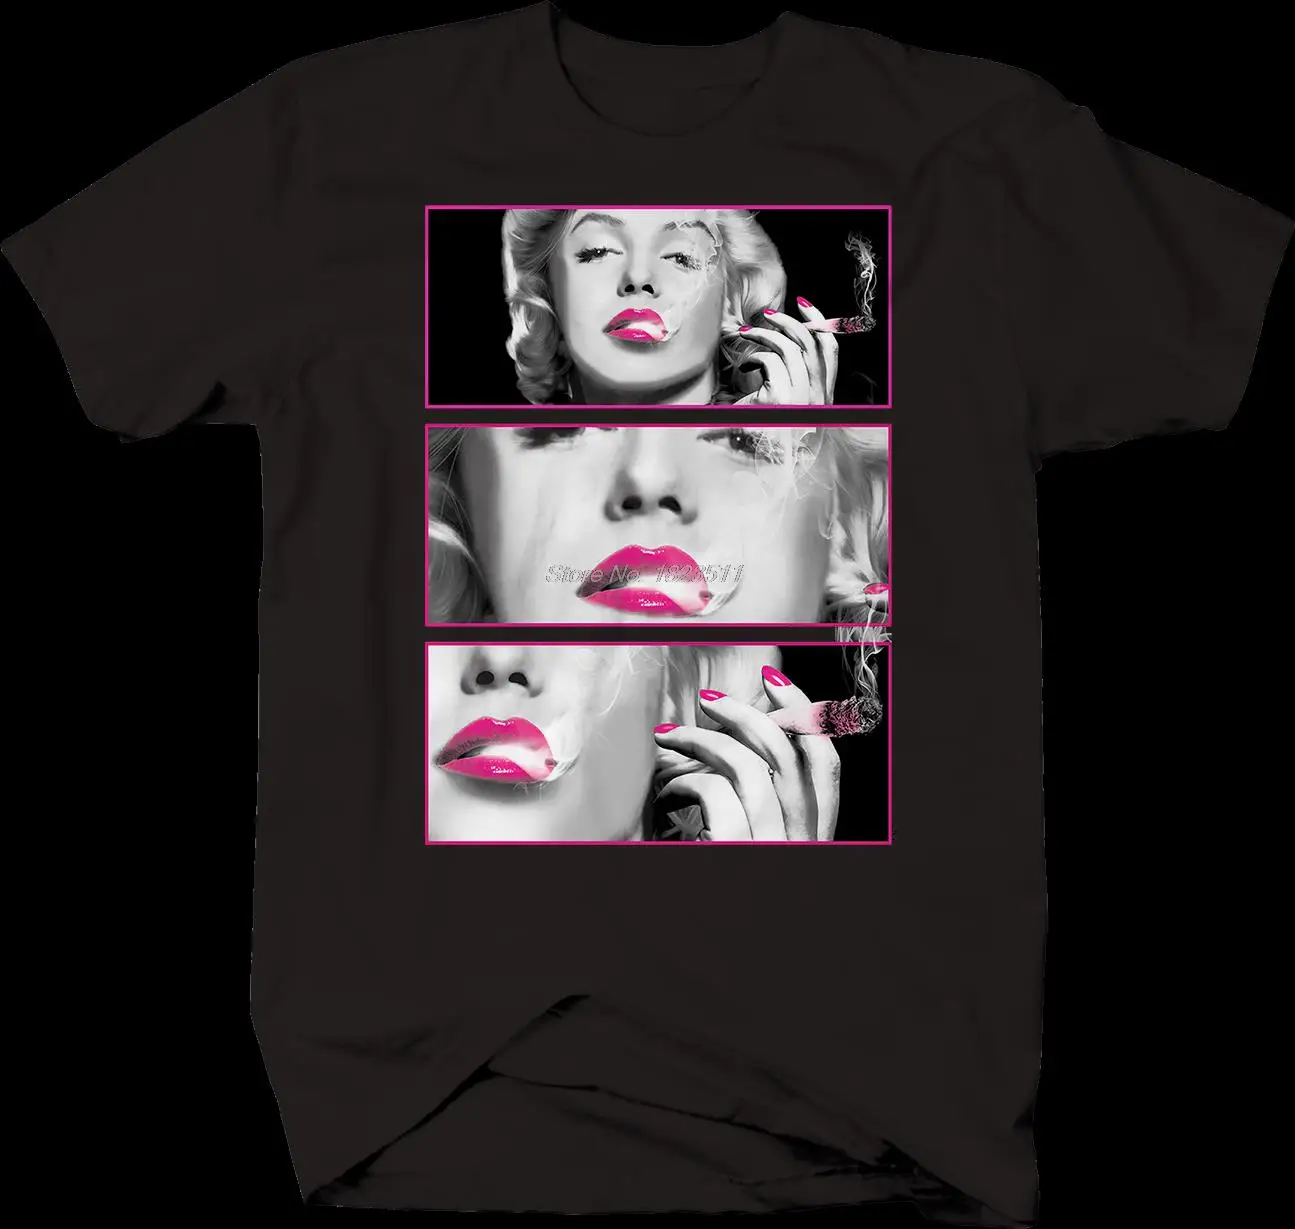 

Футболка мужская хлопковая, пикантная Модная рубашка с Мэрилин Монро, с принтом губ, курение марихуаны, модная уличная одежда в стиле Харадз...